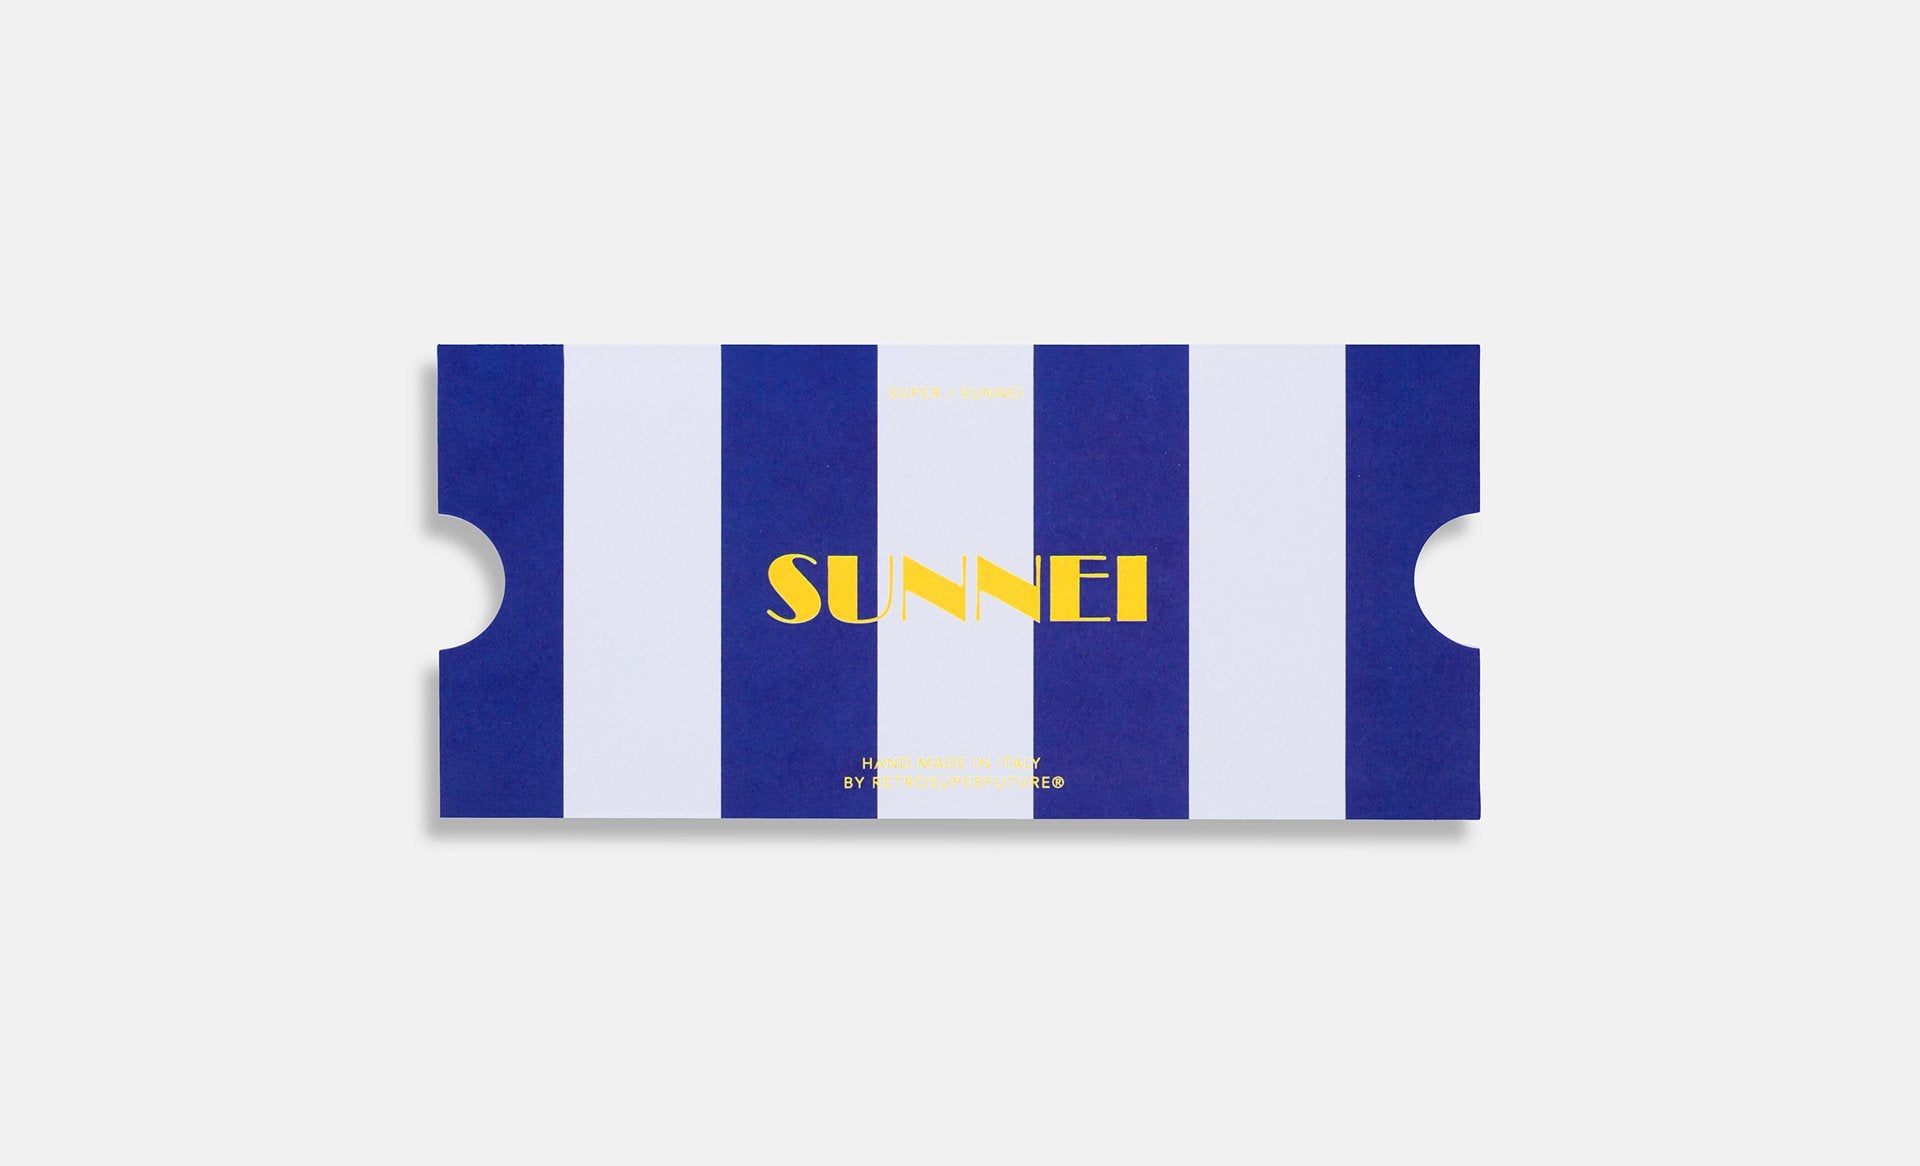 Super/Sunnei II Blu - Retrosuperfuture USA -